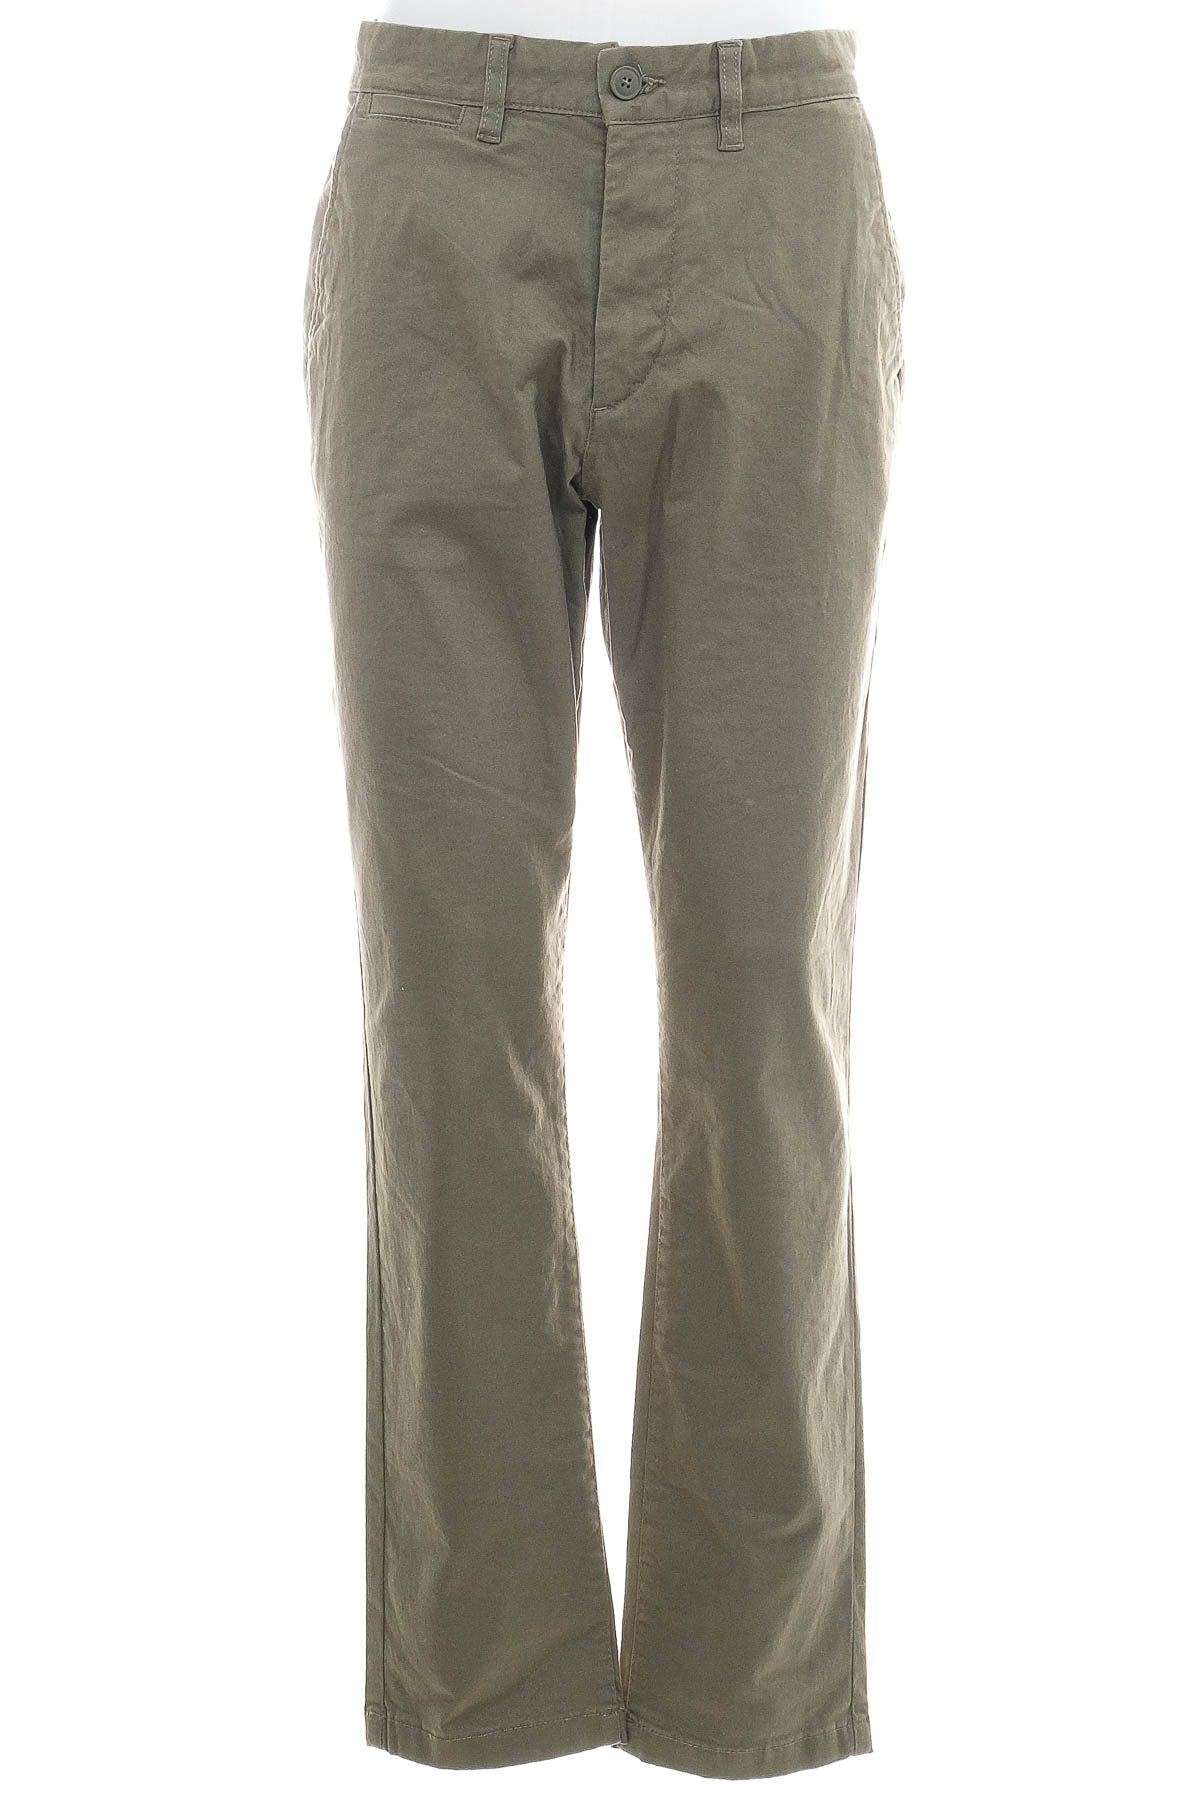 Men's trousers - H&M - 0